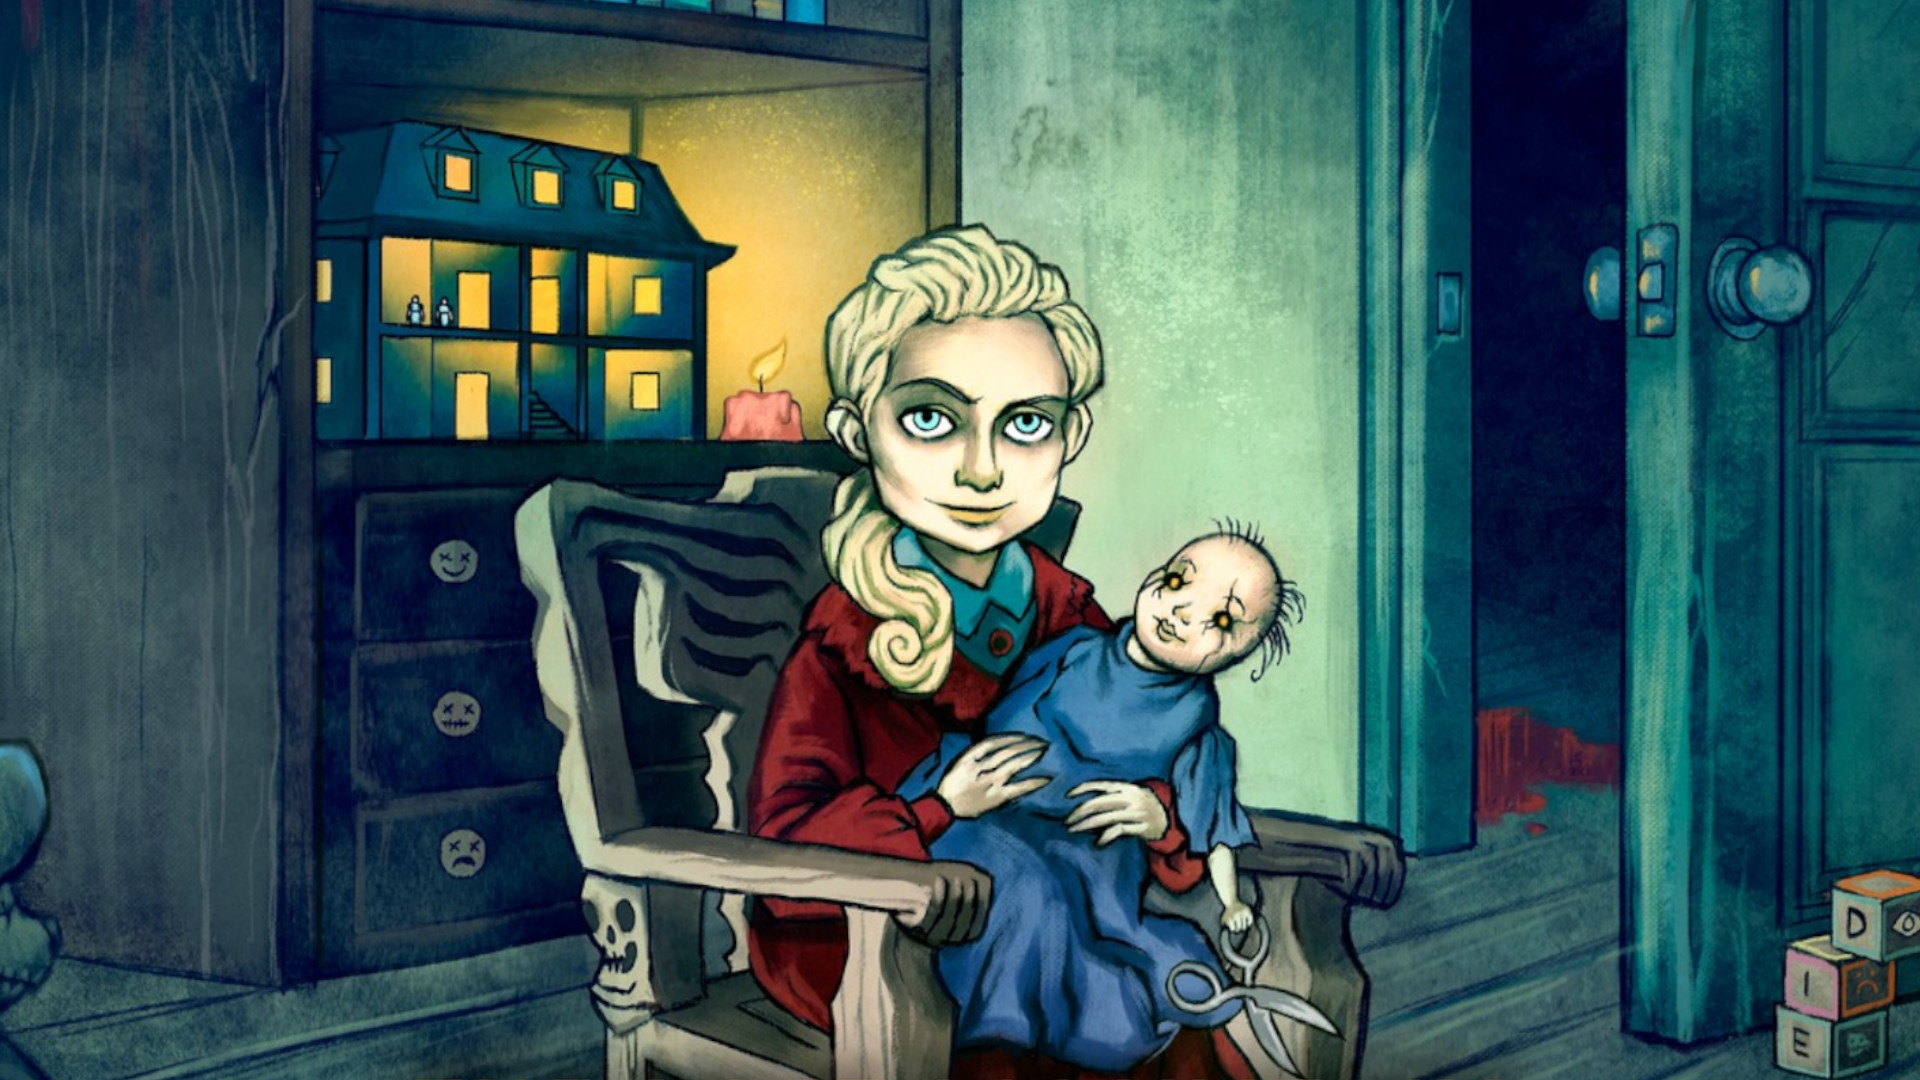 Uma jovem loira senta-se numa cadeira de baloiço com uma boneca assustadora na mão